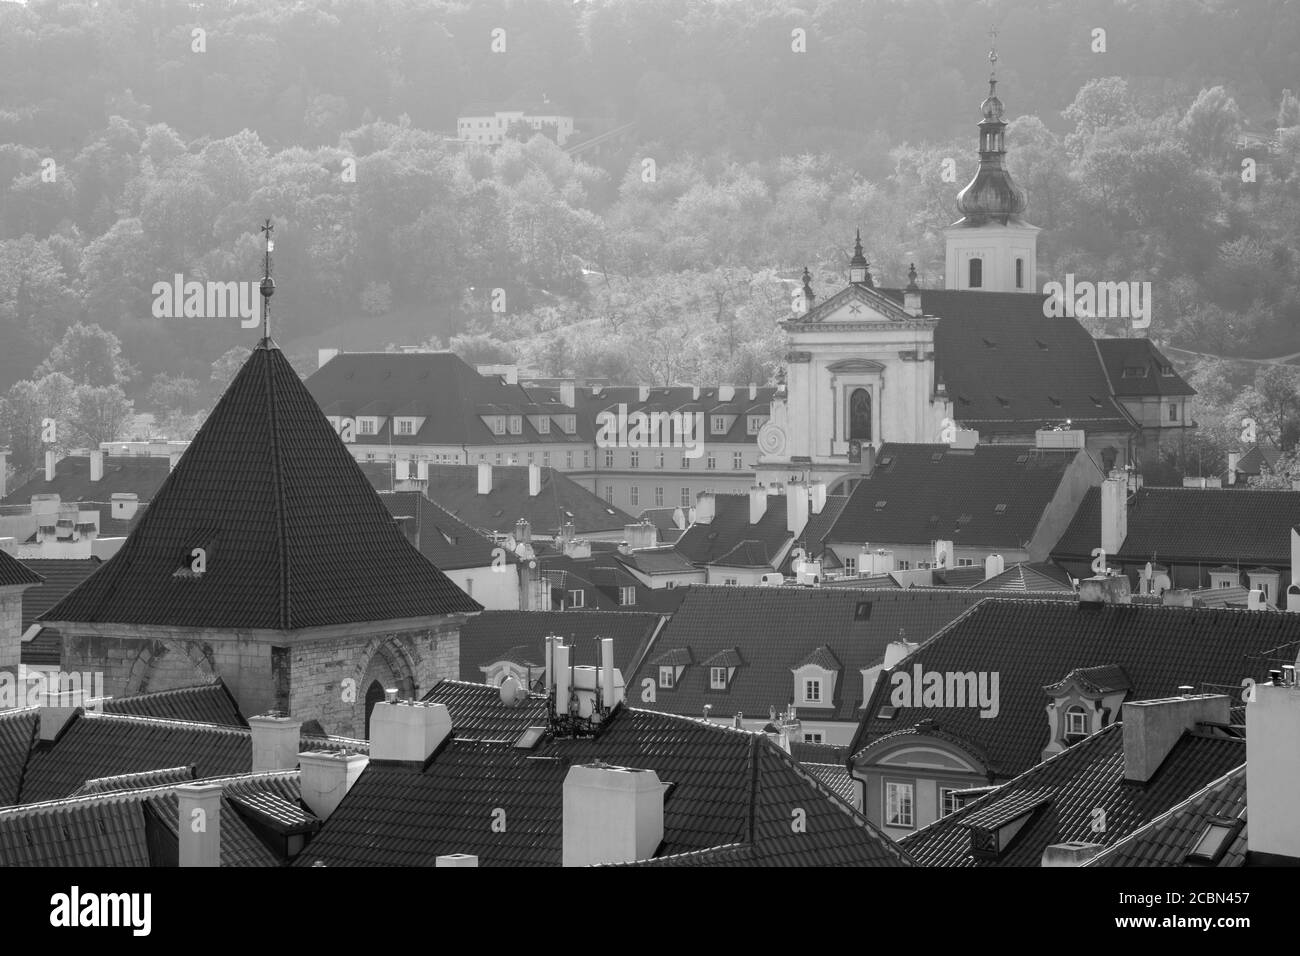 Praga - los tejados del barrio pequeño y la iglesia barroca de la Señora victoriosa. Foto de stock